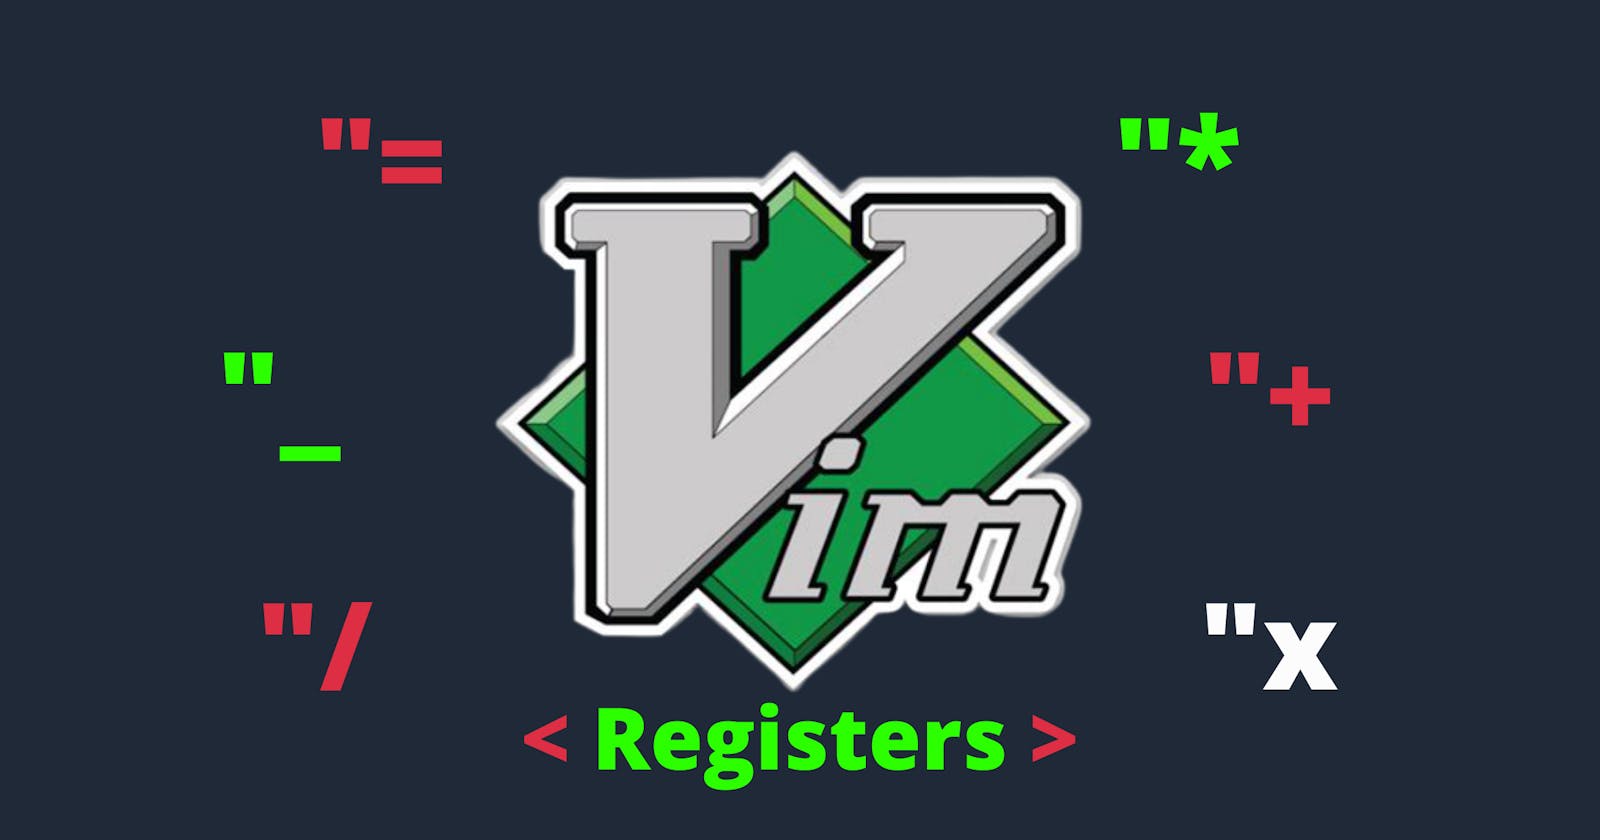 Vim: Registers